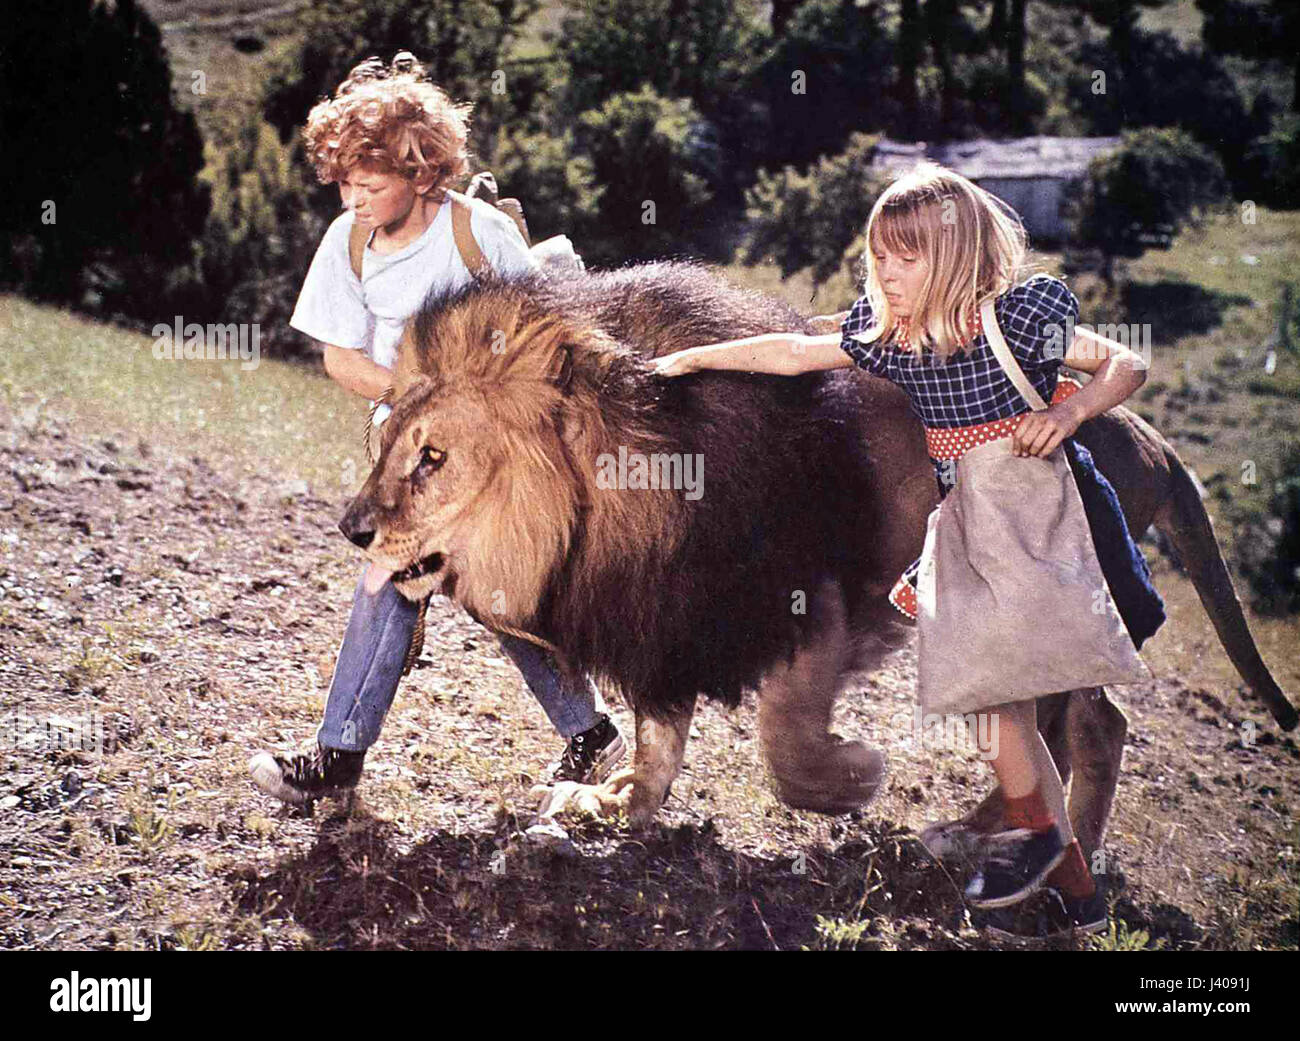 Napoleon And Samantha, aka: Flucht in die Wildnis, USA 1972, Regie: Bernard McEveety, Darsteller: Johnny Whitaker, Jodie Foster, Löwe Major Stock Photo